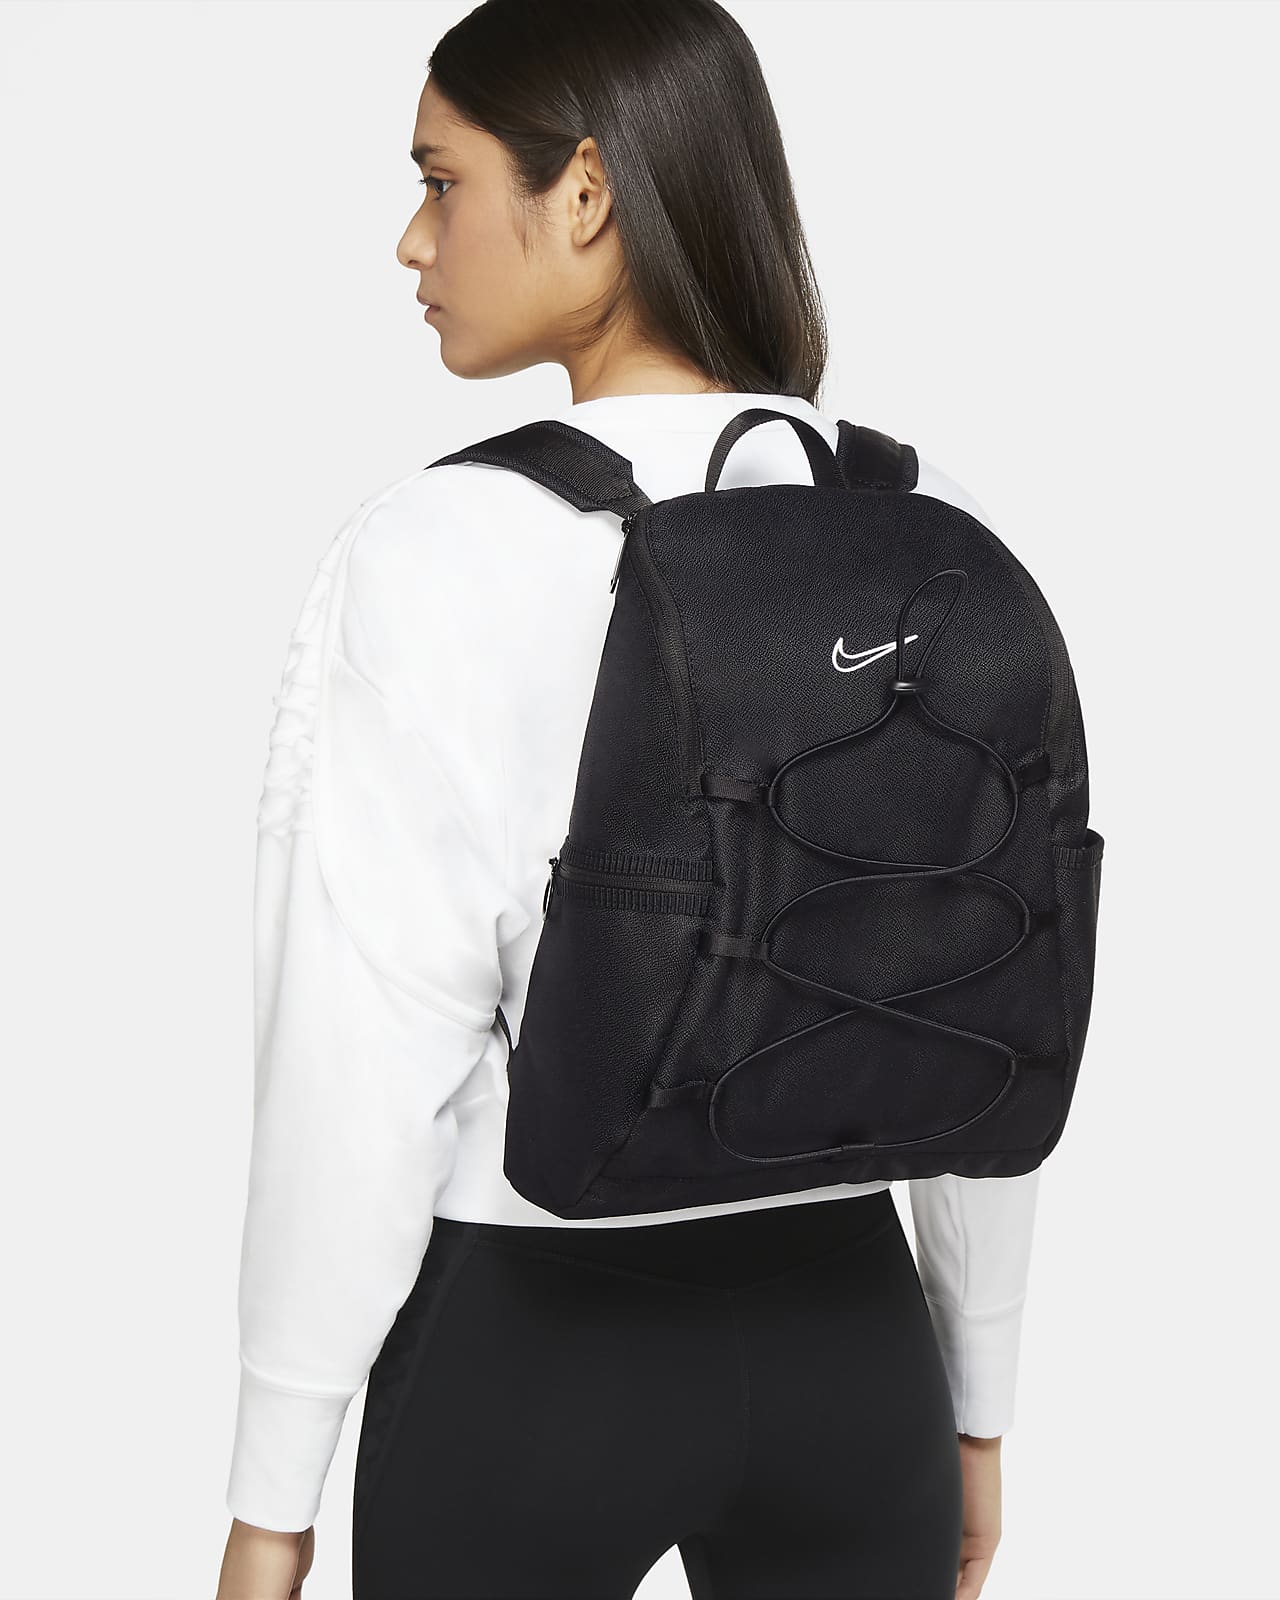 Träningsryggsäck Nike One för kvinnor (16 l)